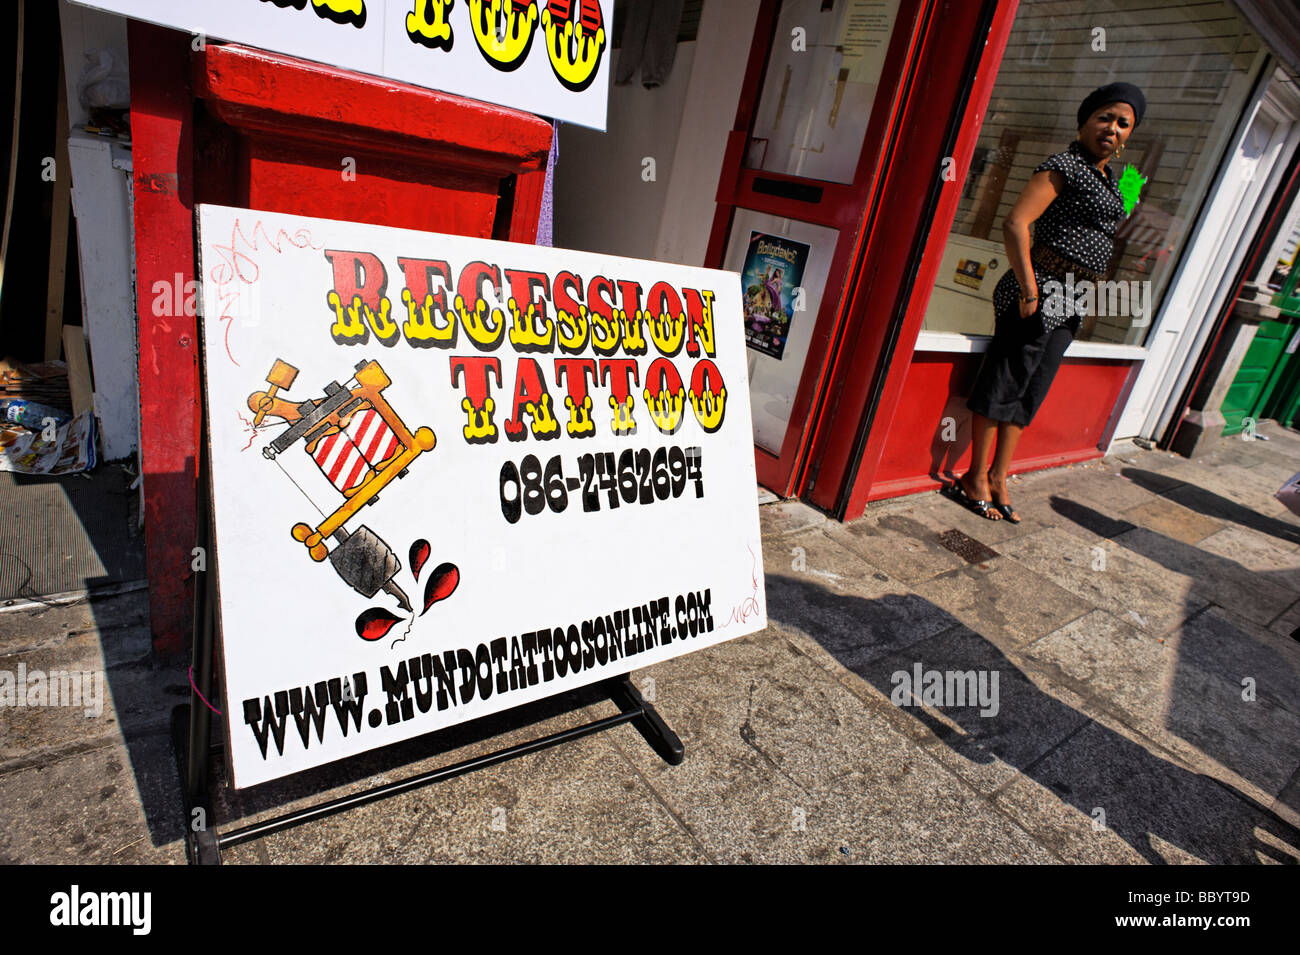 Rezession Tattoo anmelden Moore Street Arbeiterviertel von Dublin Irland Stockfoto